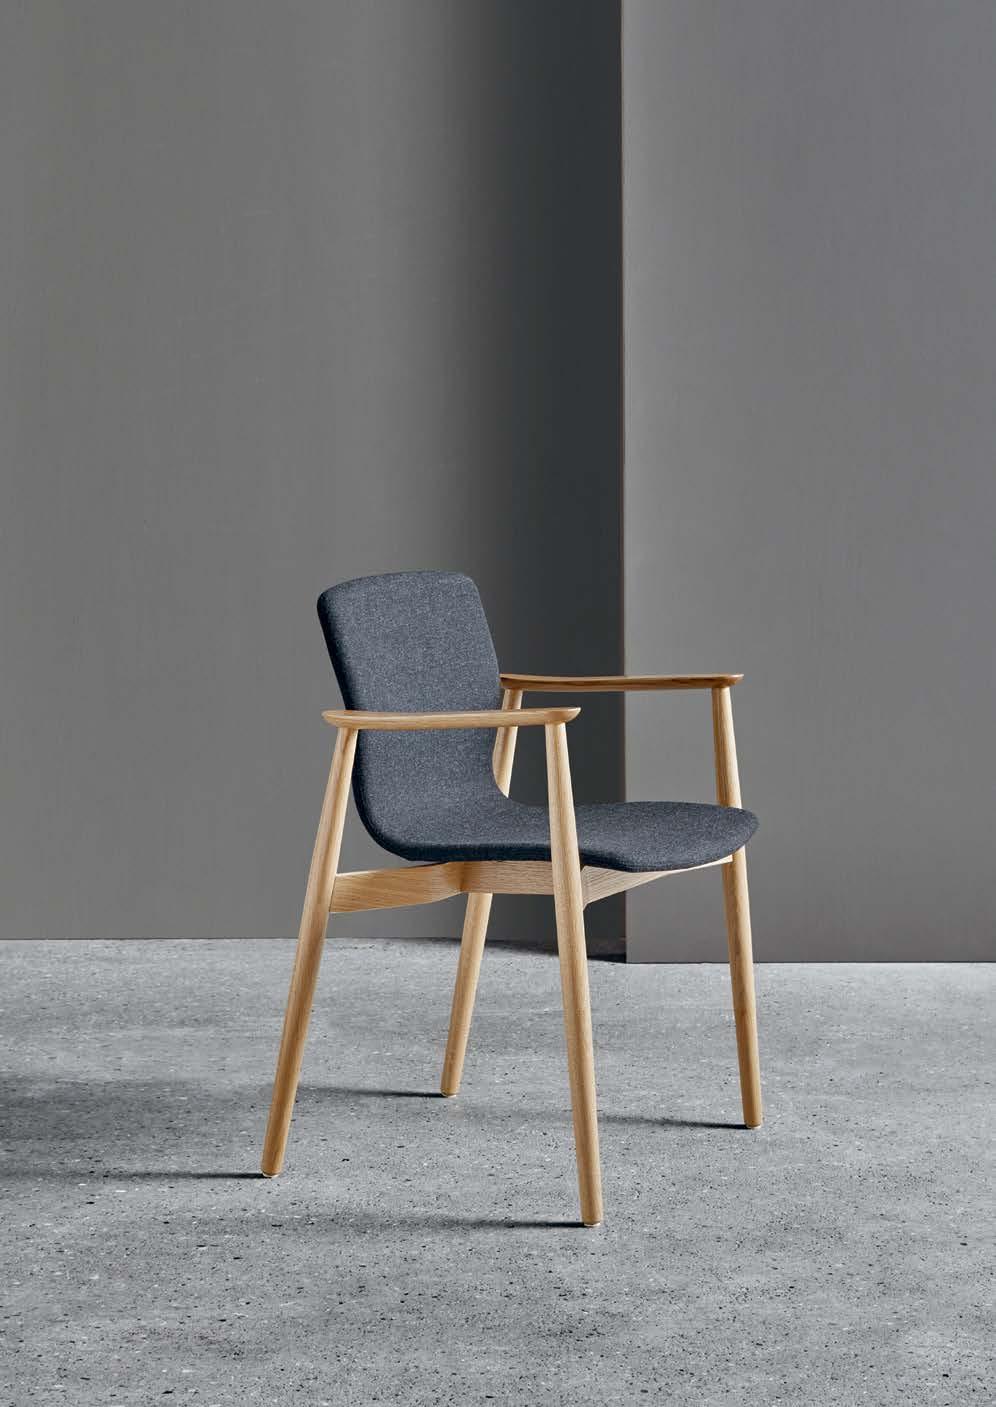 BUTTERFLY CLASSIC CHAIR DESIGNED BY NIELS GAMMELGAARD I den nye Butterfly Classic Chair bibeholdes samme Classic designudtryk og Classic-serien udvides med en eksklusiv og samtidig komfortabel